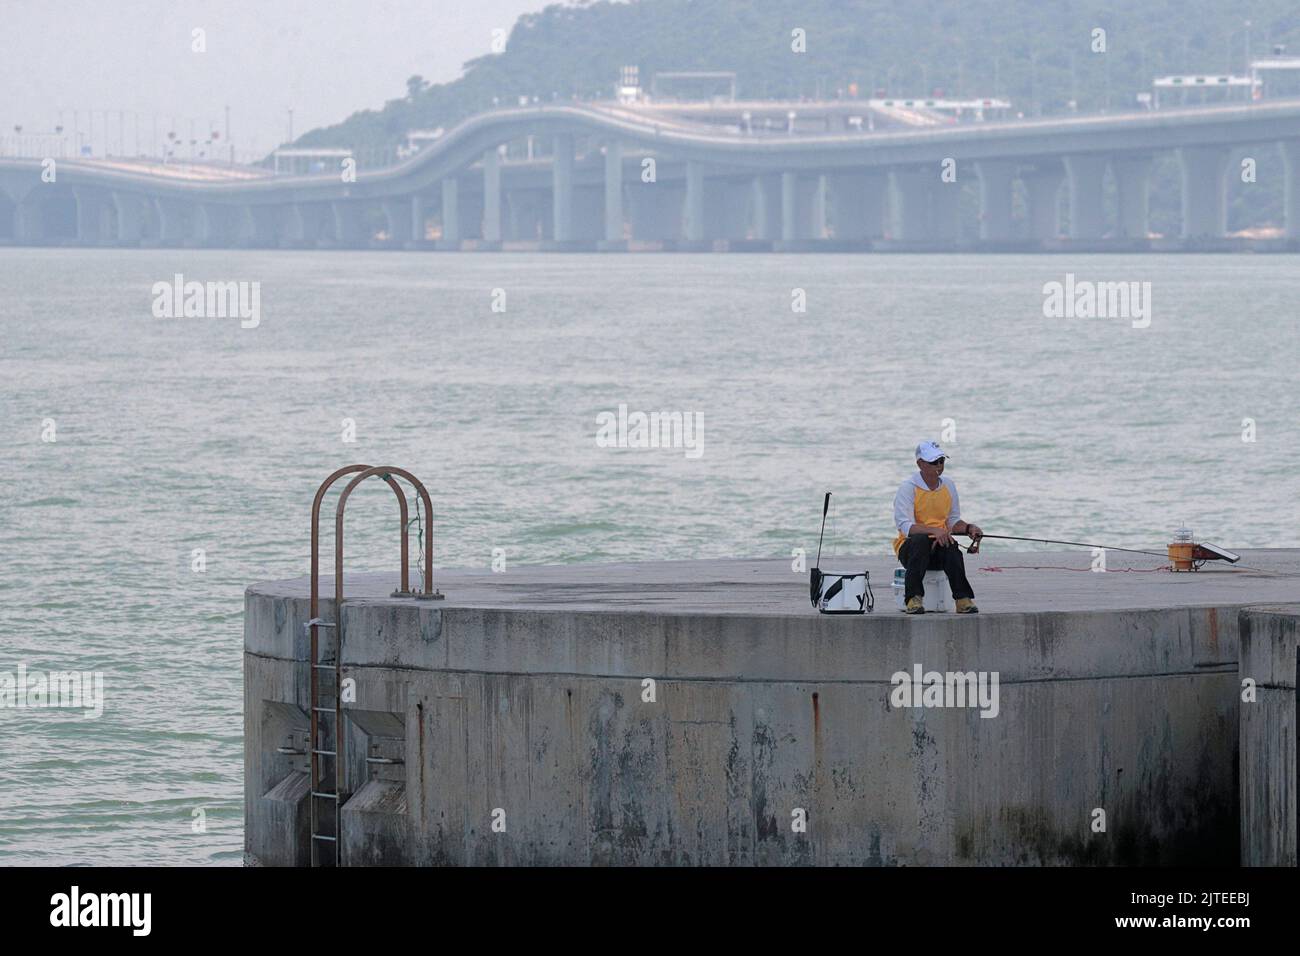 Pescador, debajo del puente de Hong Kong - Zhuhai - Macao (HZMB), sección de Hong Kong, en el delta del río Perla, Guangdong, China Foto de stock